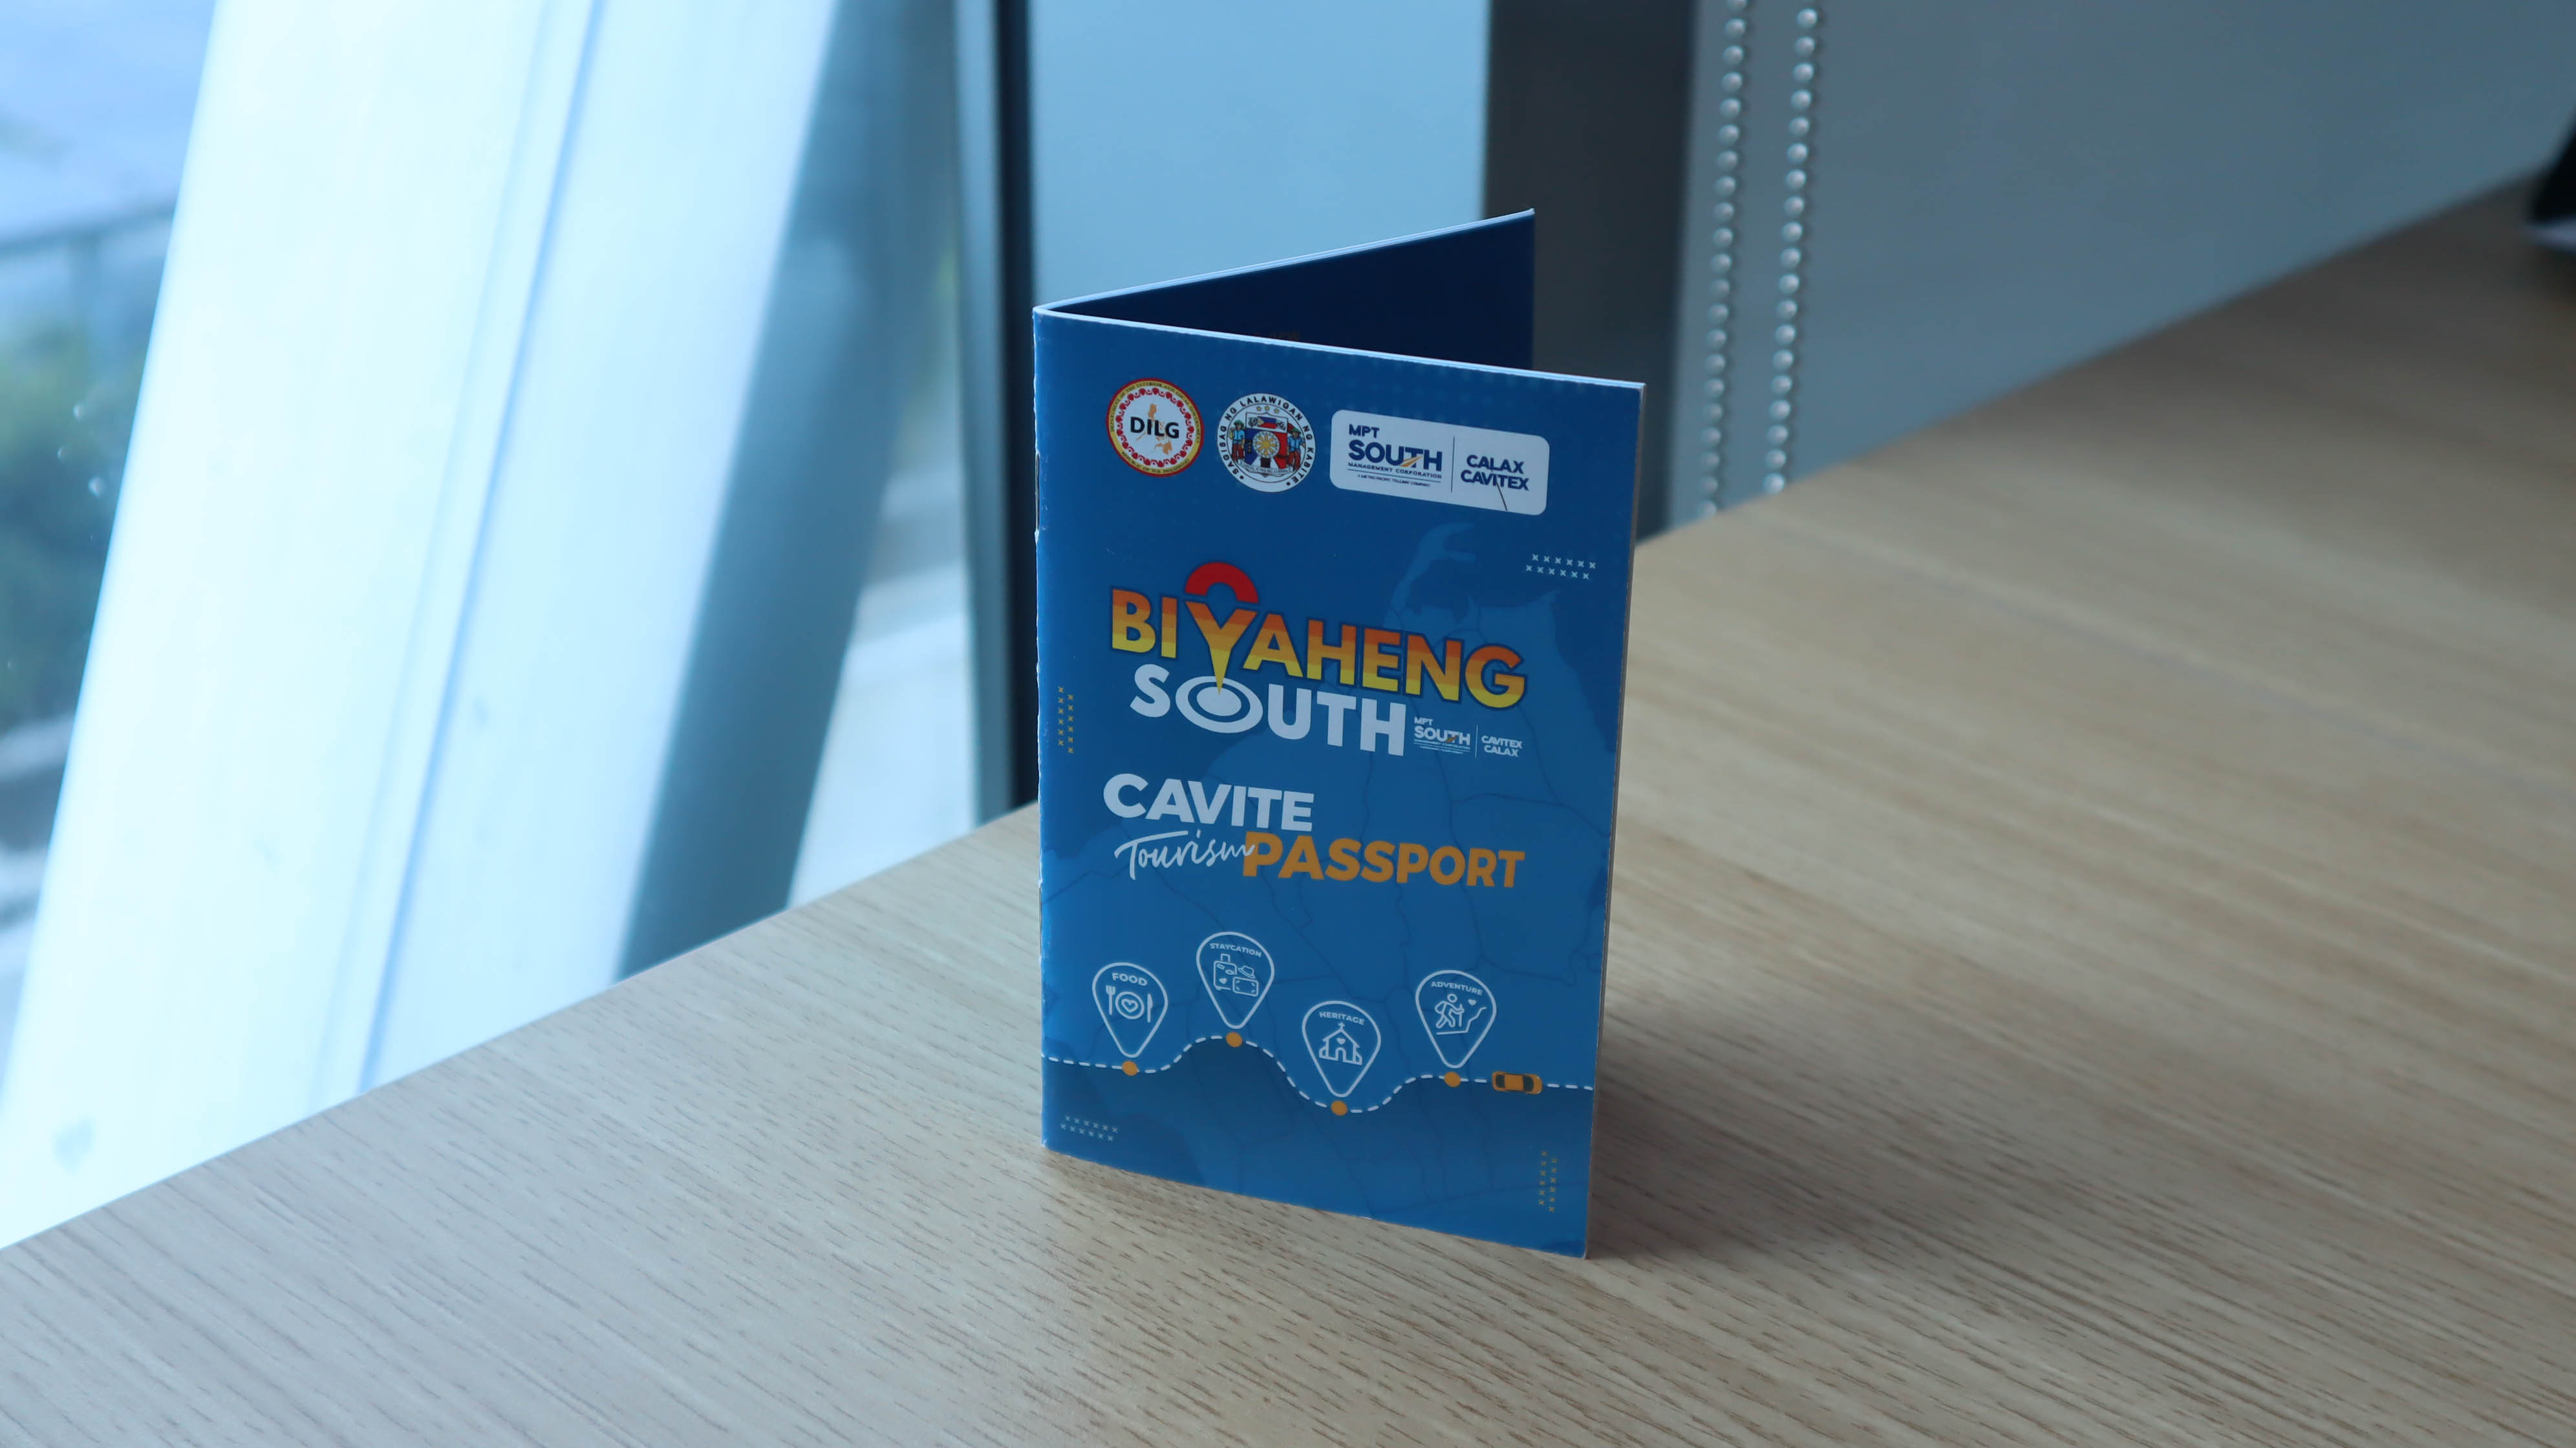 Biyaheng South Tourism Passport